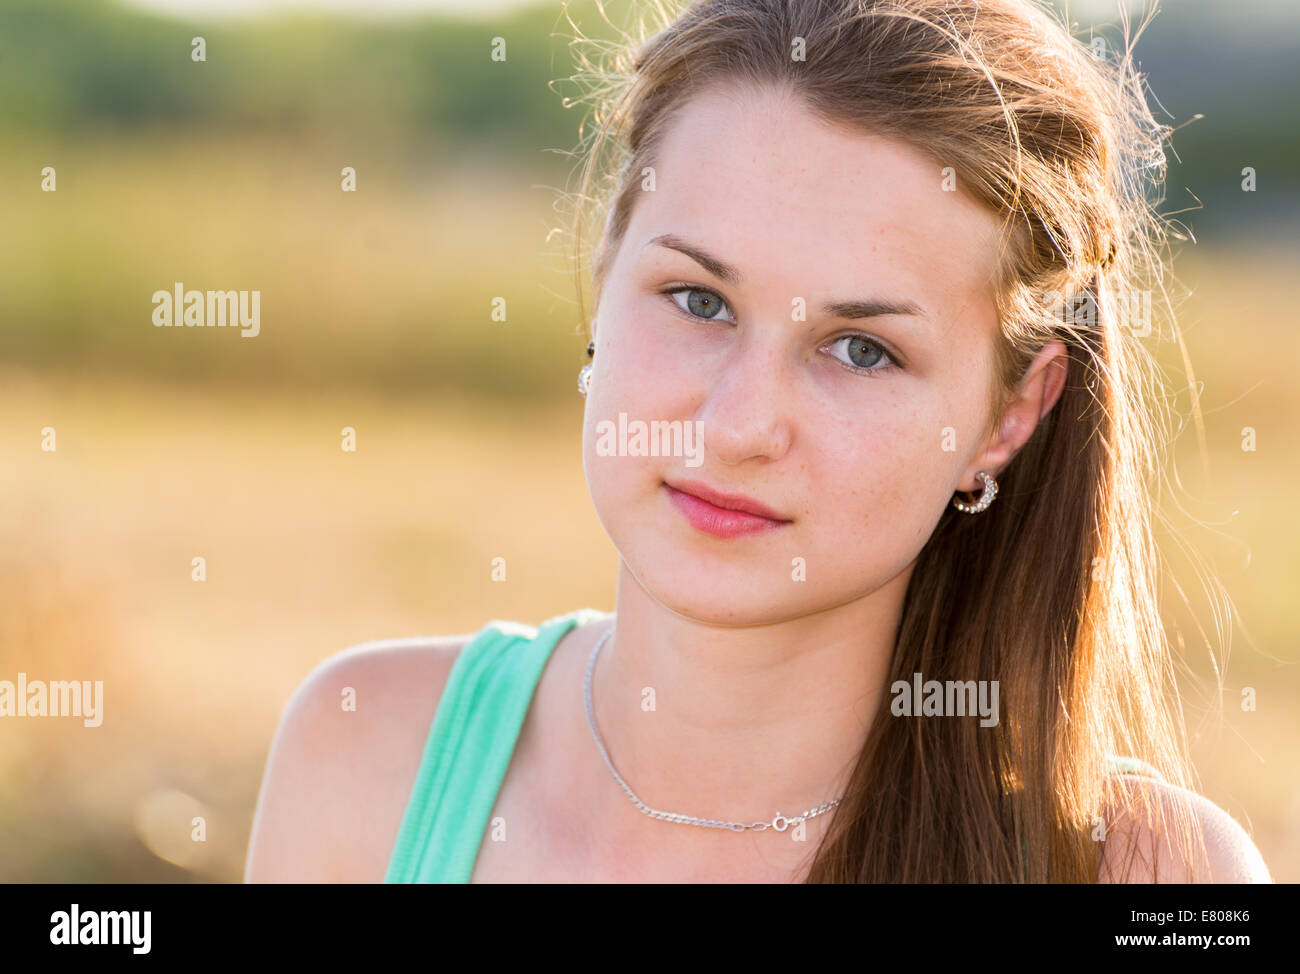 Teen Mädchen ruhen in einem Feld Stockfoto